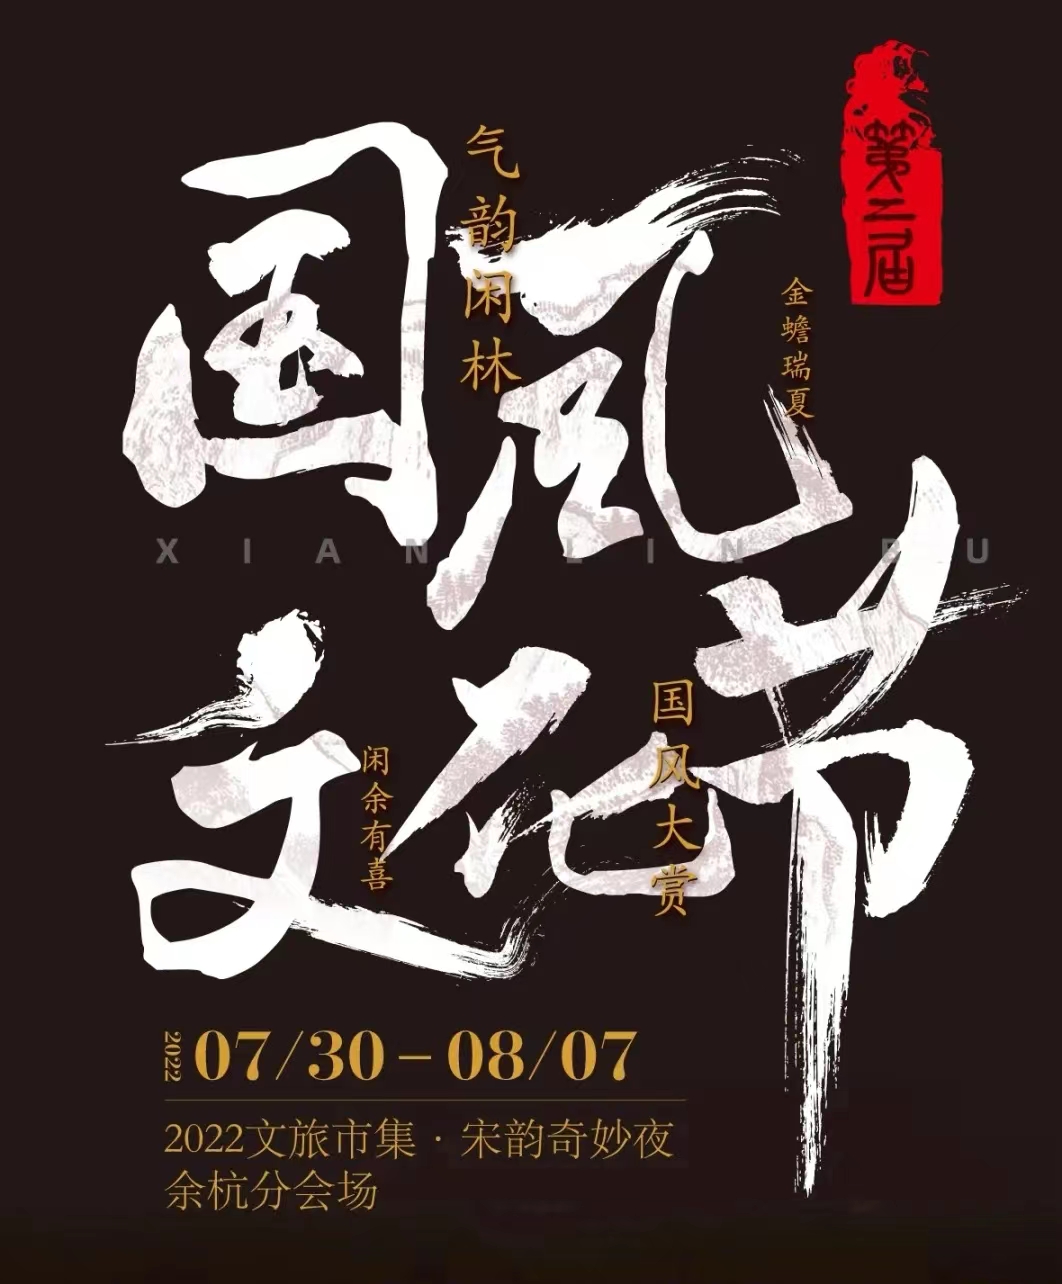 杭州国风节 | 杭州闲林第二届国风文化节活动攻略